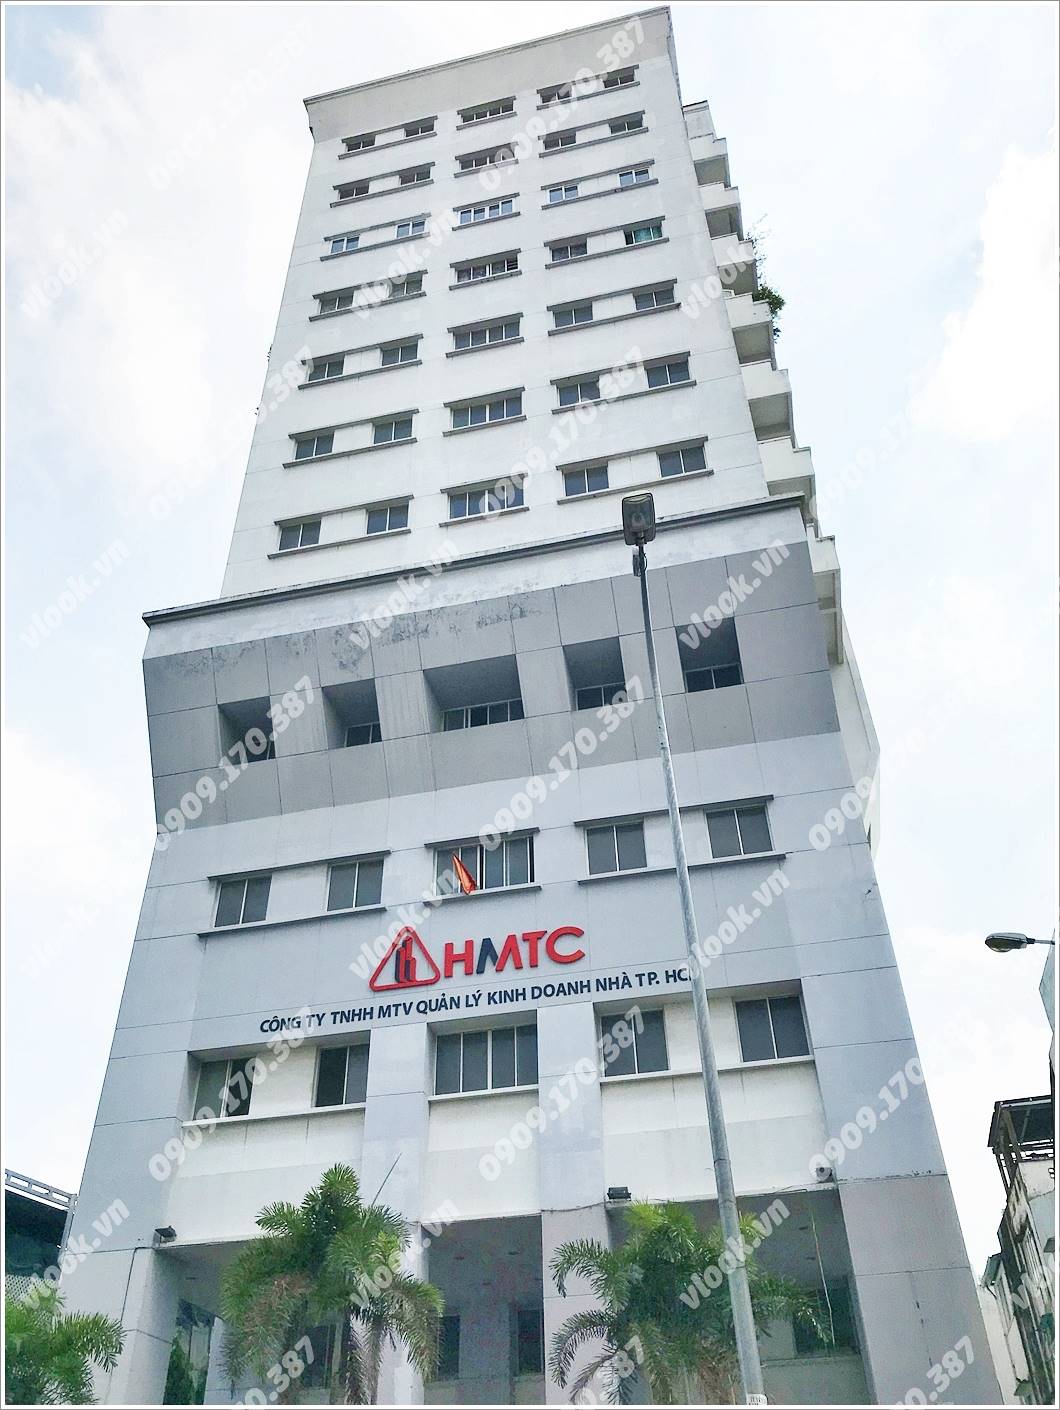 Cao ốc cho thuê văn phòng HMTC Nguyễn Trãi, Quận 1, TPHCM - vlook.vn